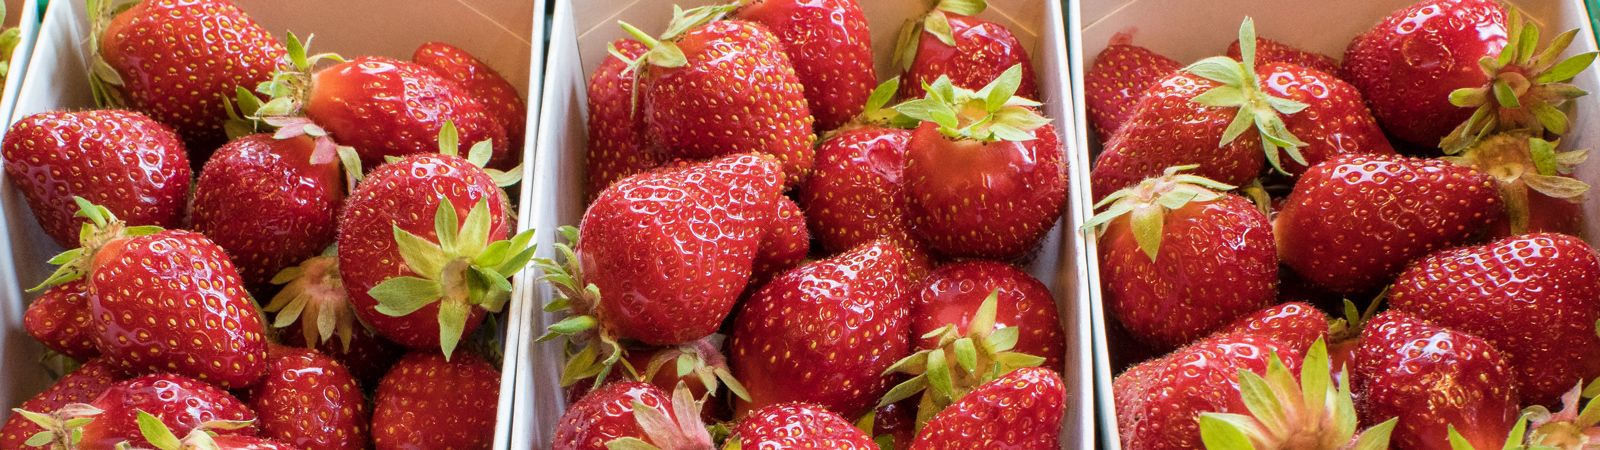 Frische Erdbeeren saisonal einkaufen